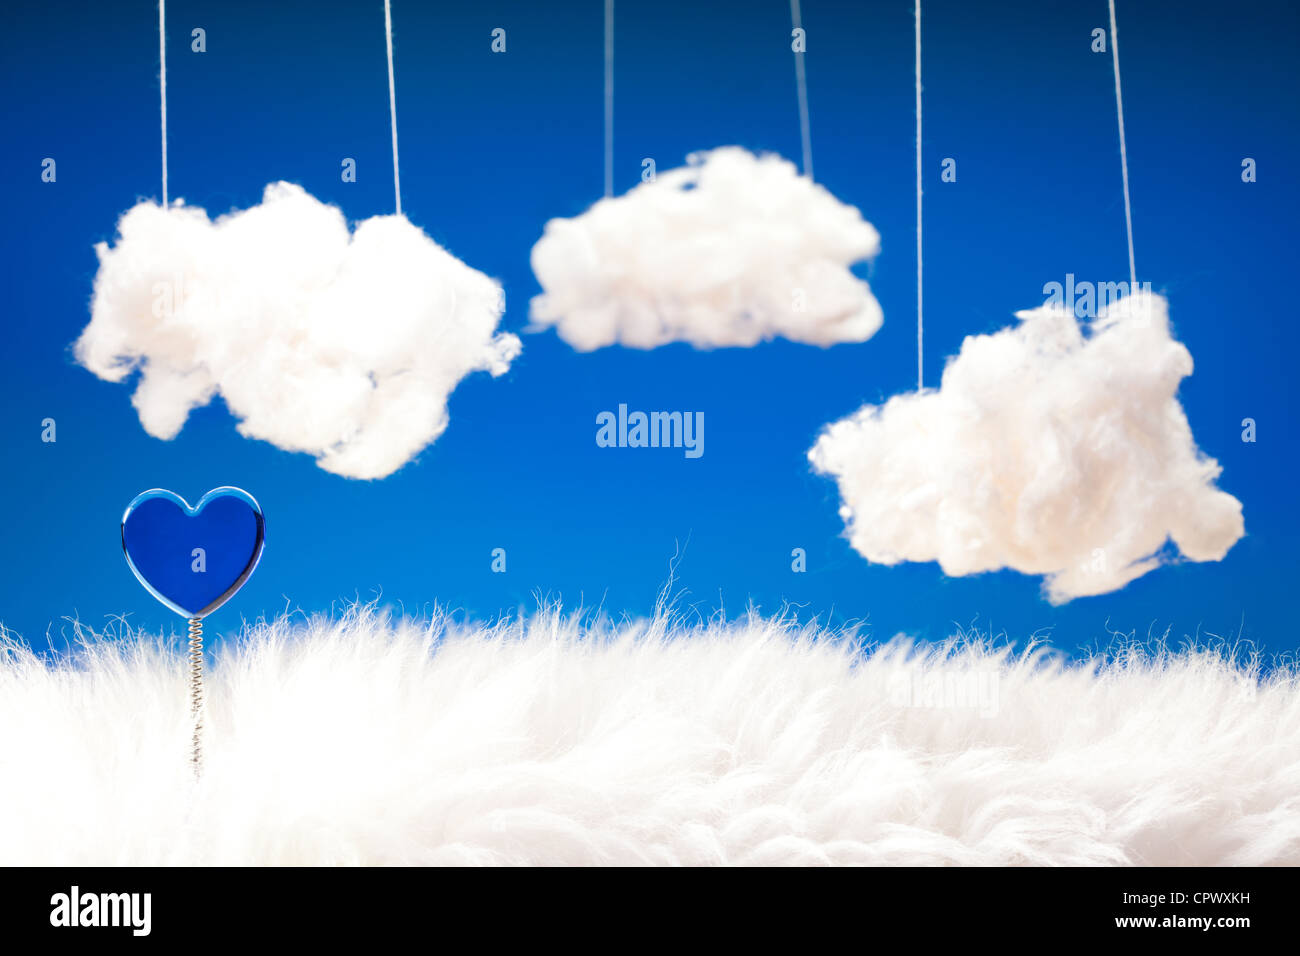 Adorable et rêves - thème en bleu au coeur de printemps, de fourrure et de nuages d'ouate Banque D'Images